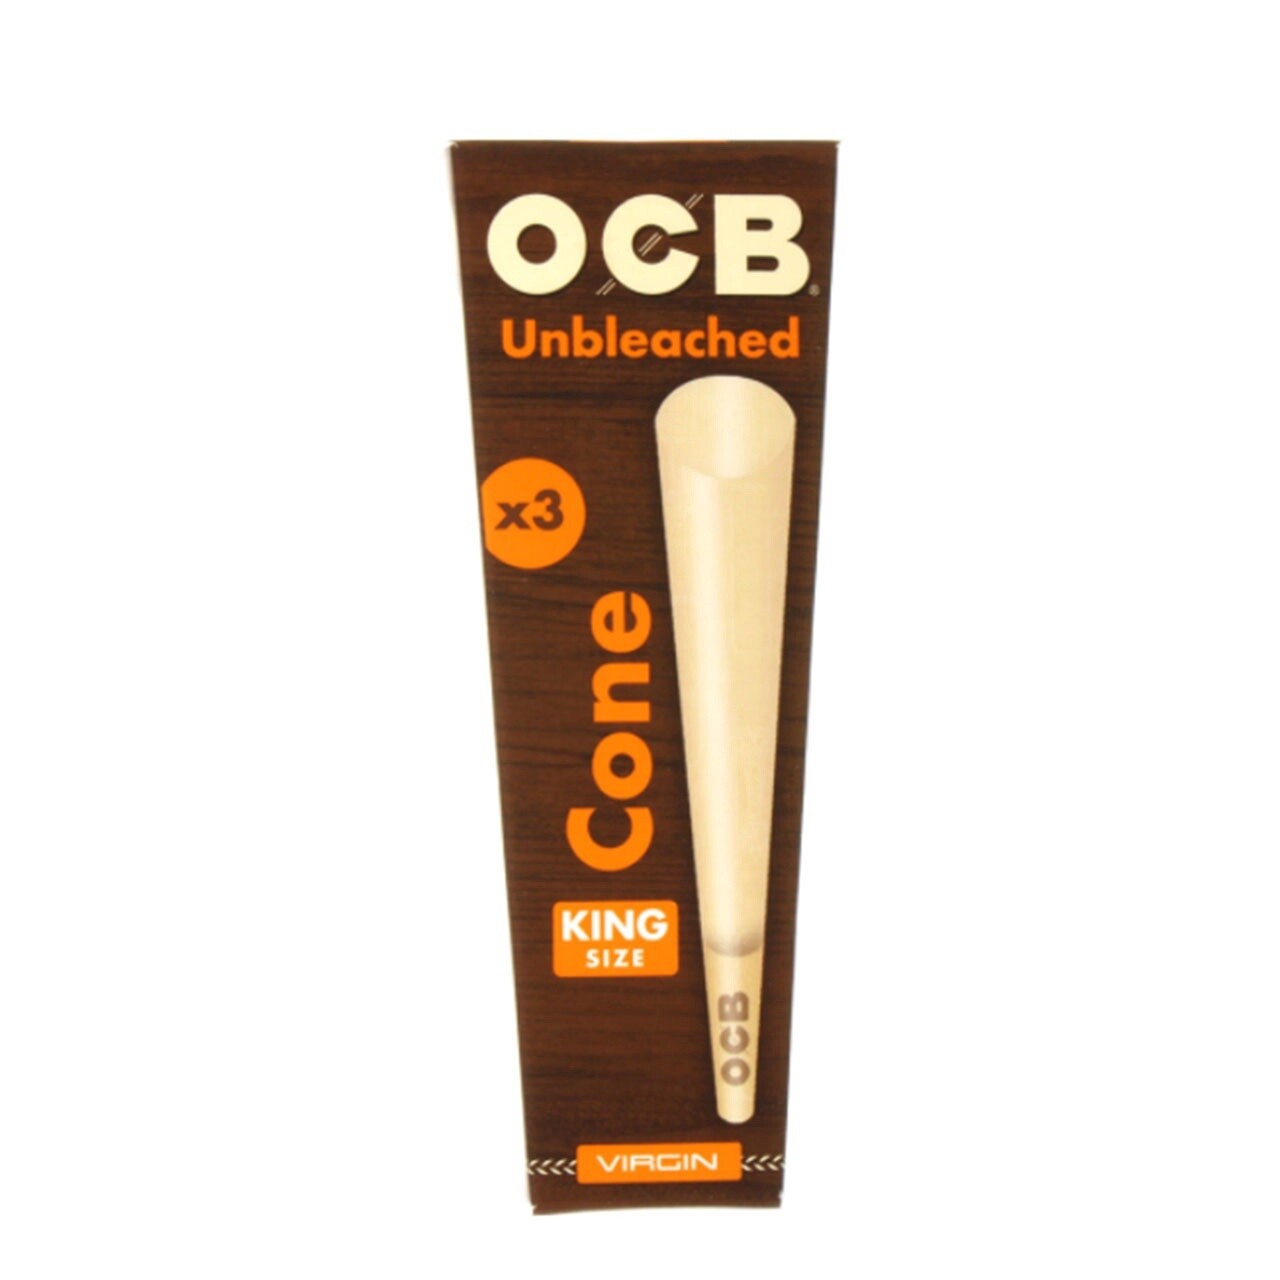 OCB Unbleached Cones 3 Pack